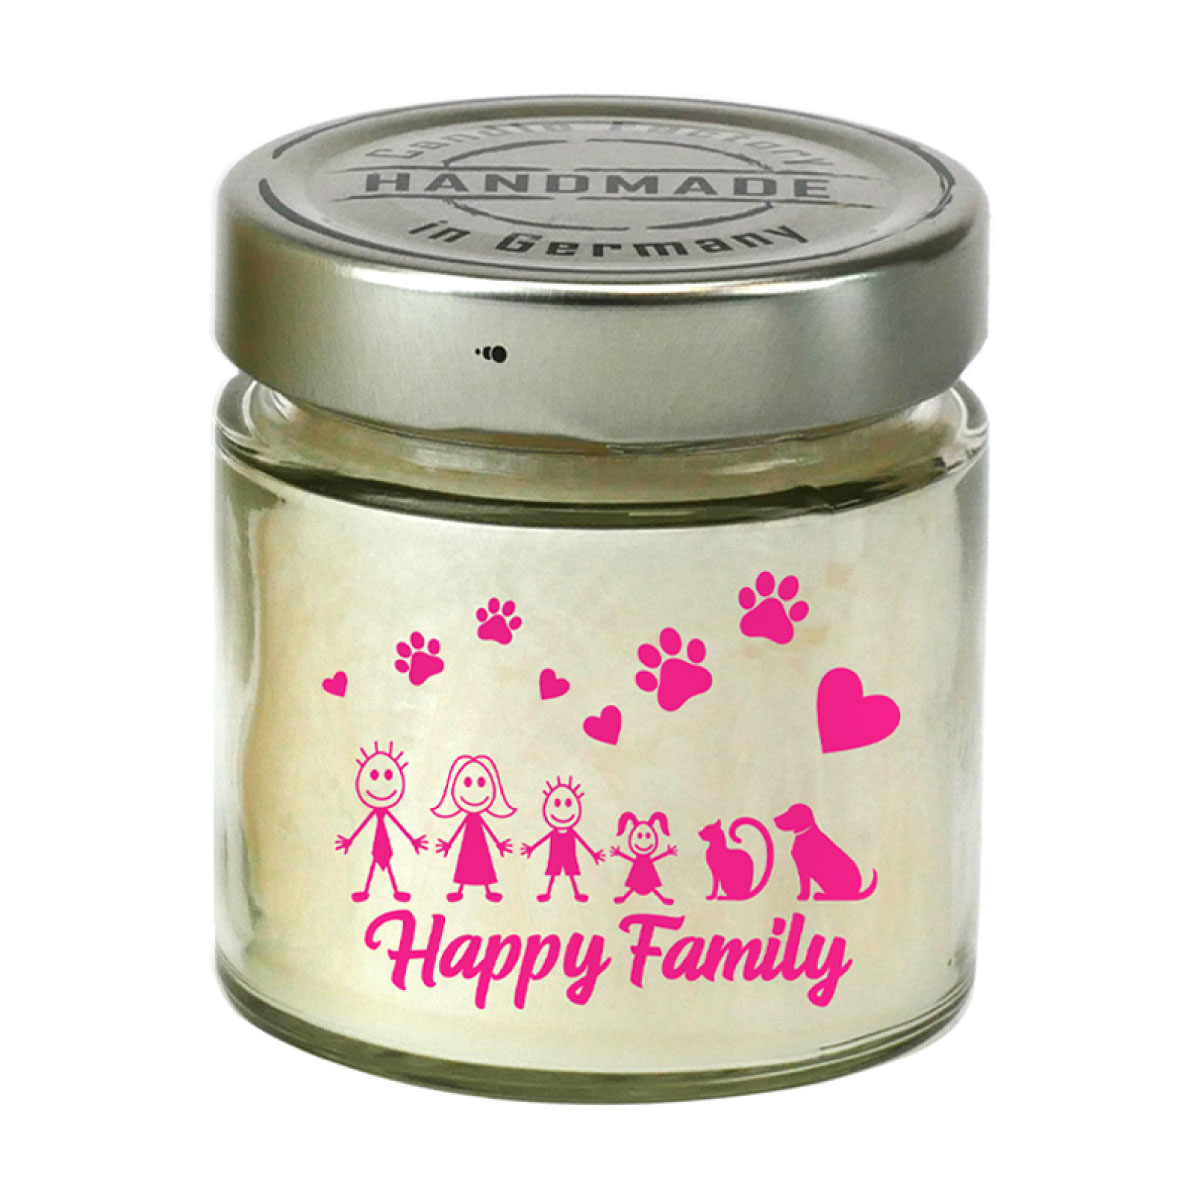 Happy Family - Bedruckte Duftkerze von Candle Factory [klein]